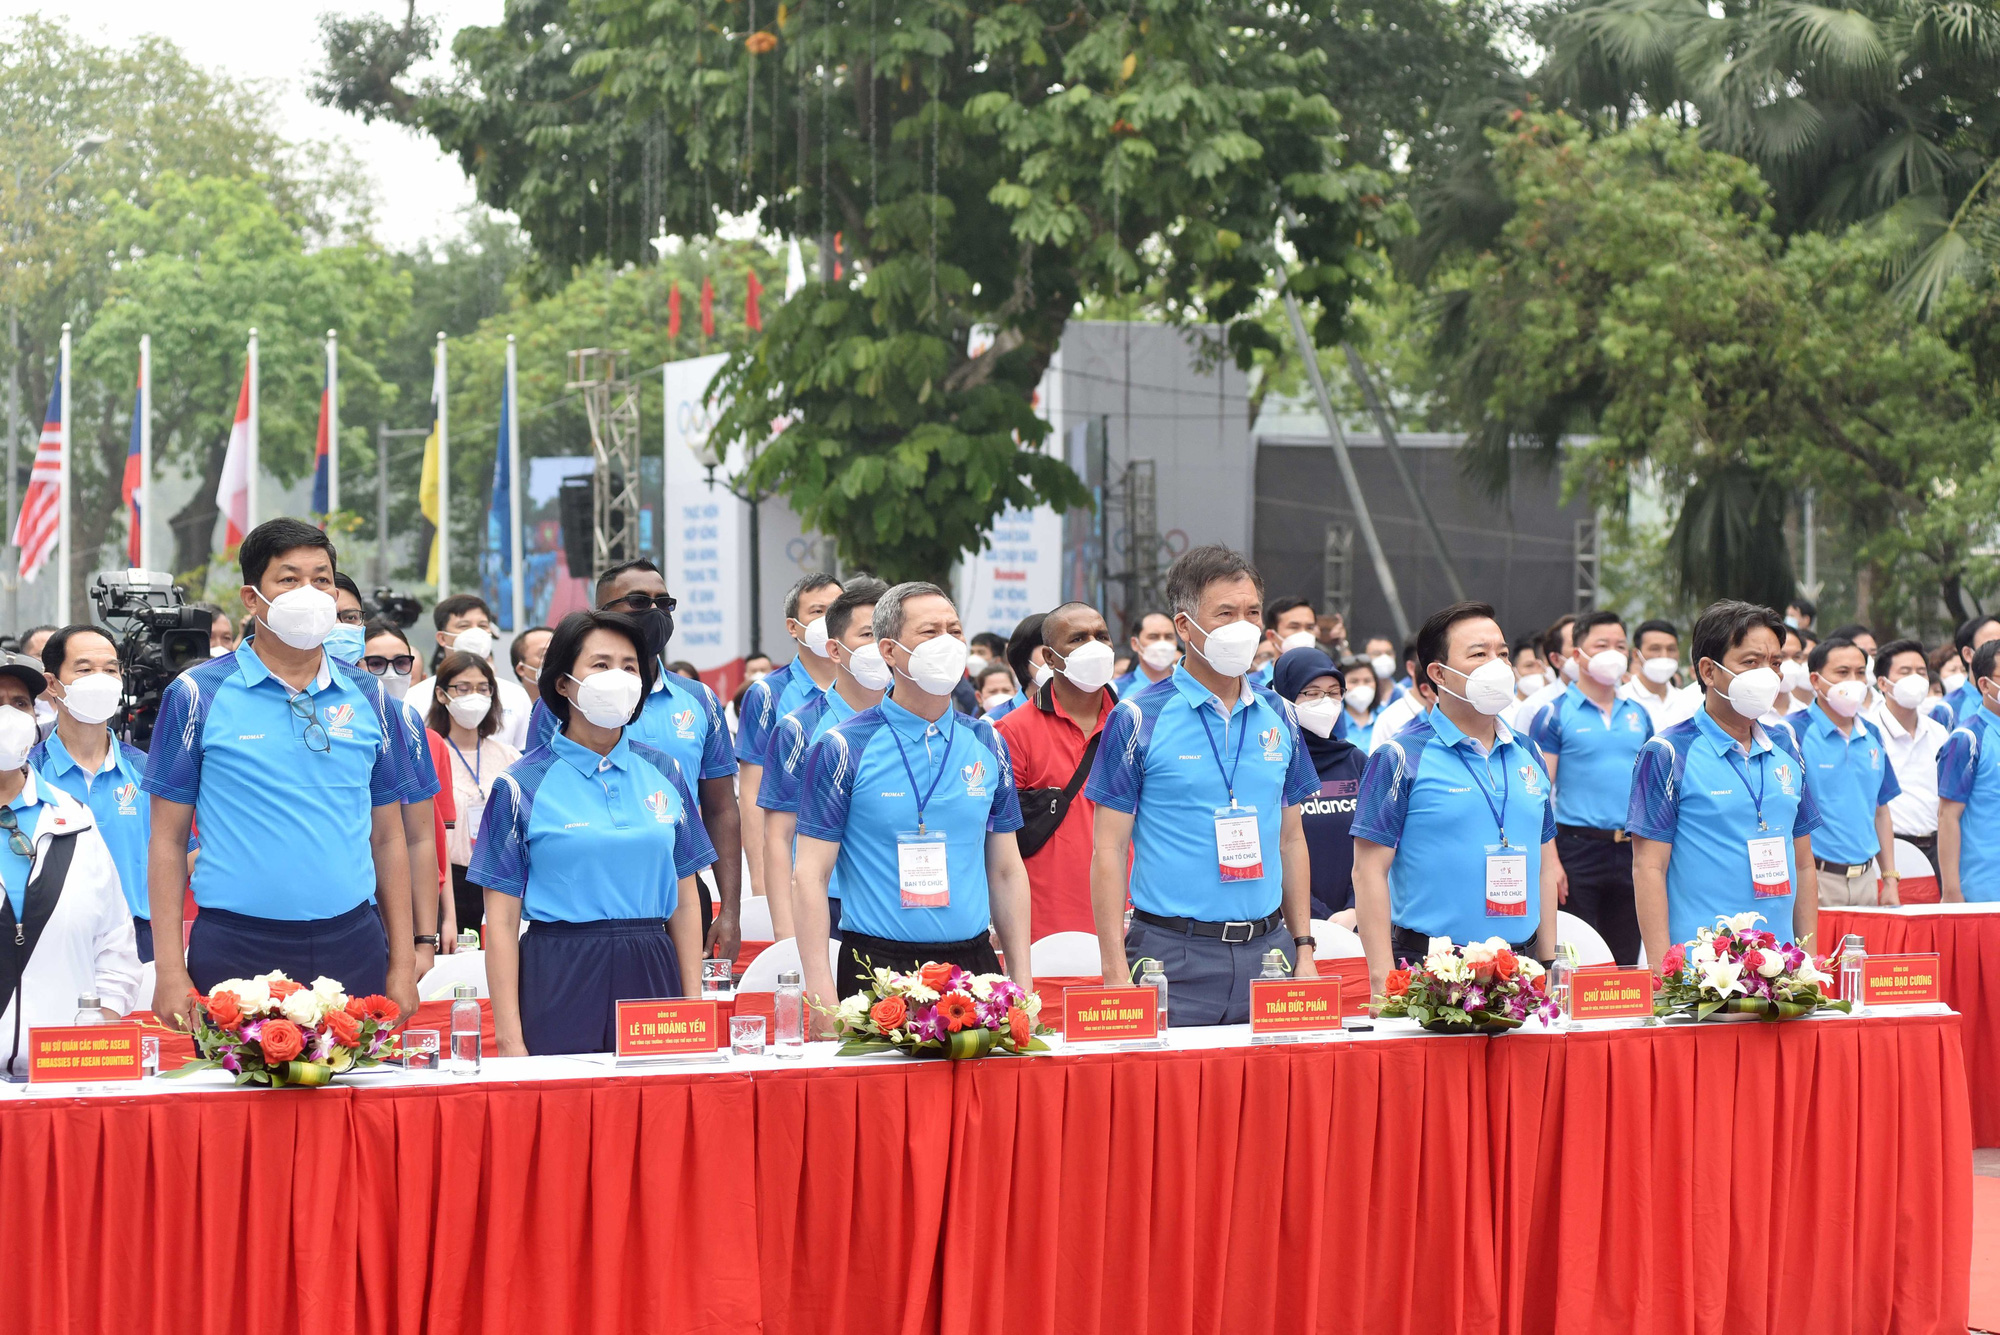 Hà Nội tổ chức Lễ phát động “Hà Nội đếm ngược 31 ngày hướng tới Đại hội Thể thao Đông Nam Á lần thứ 31” - Ảnh 1.